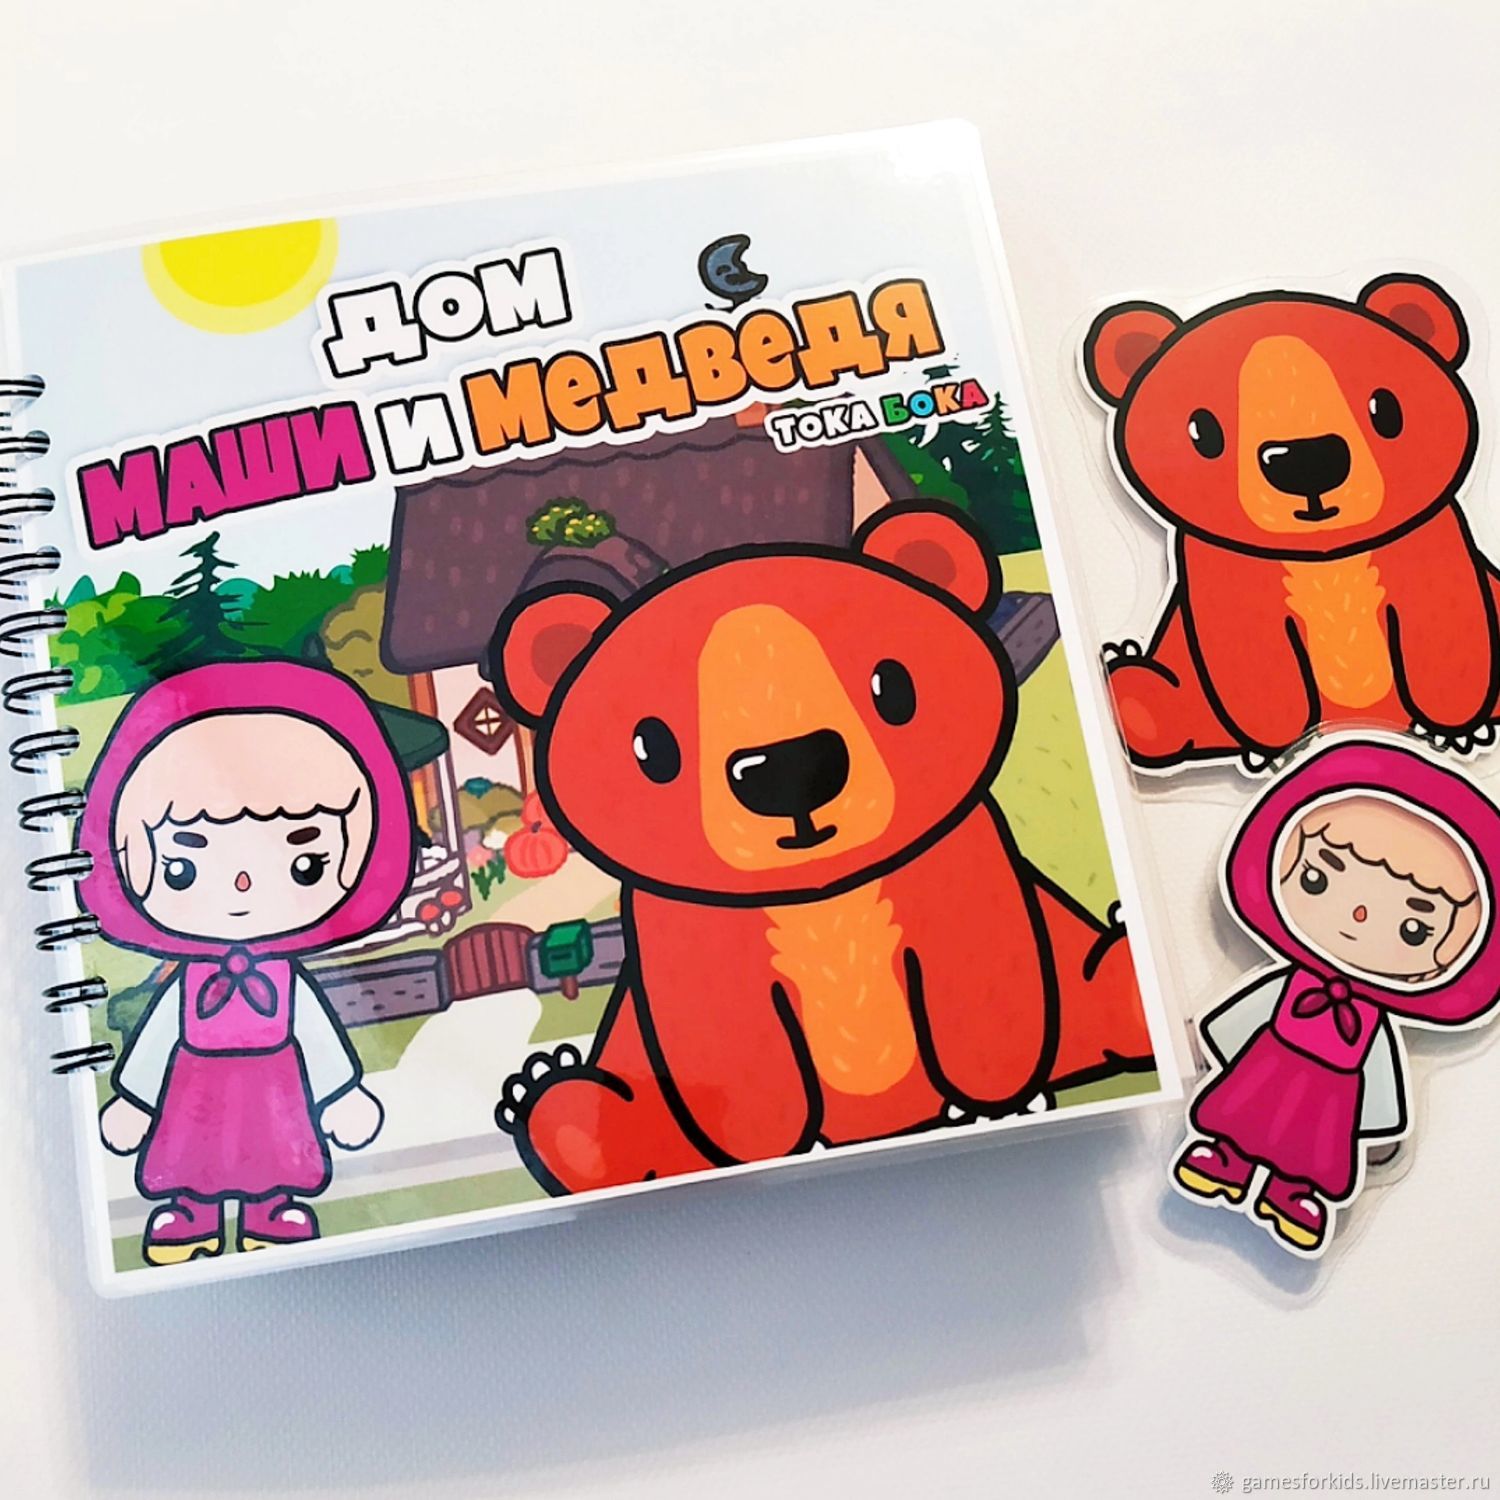 Игровой набор Маша и медведь Домик Маши купить в Минске в интернет-магазине | BabyTut